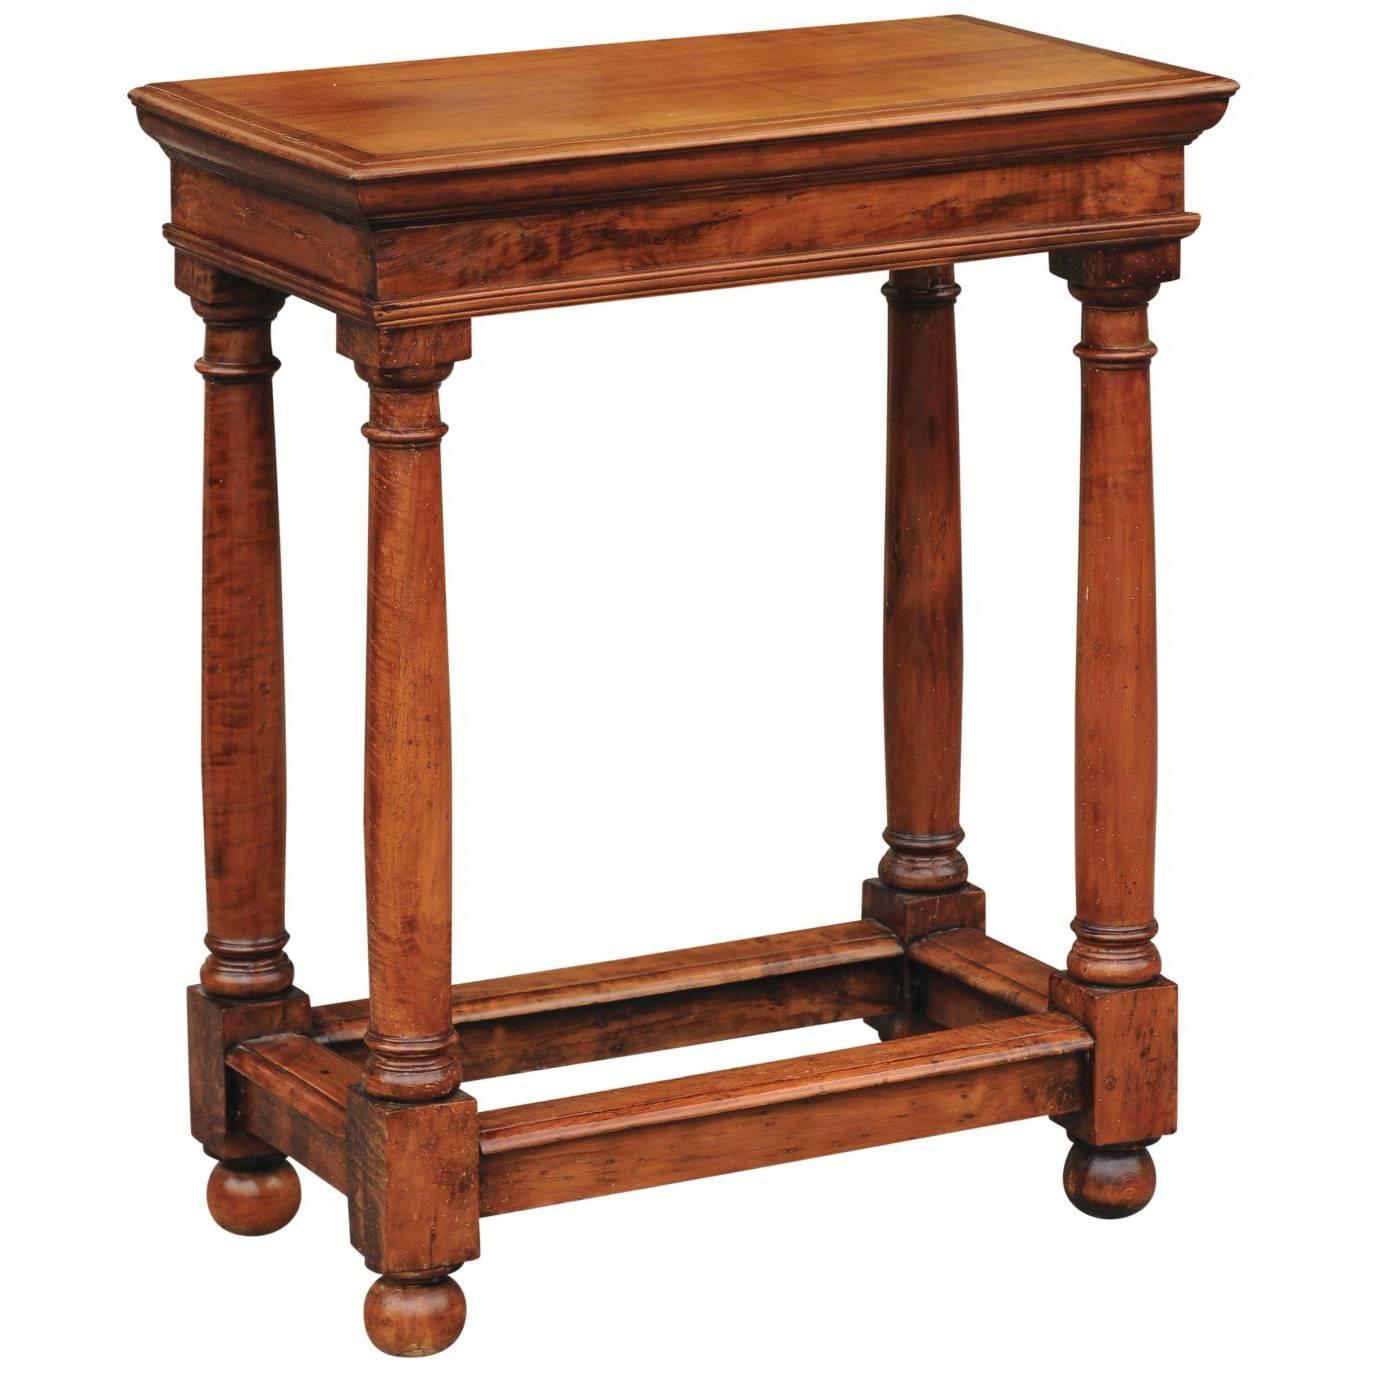 Table d'appoint en bois fruitier de style Empire français du milieu du 19e siècle avec pieds à colonne dorée